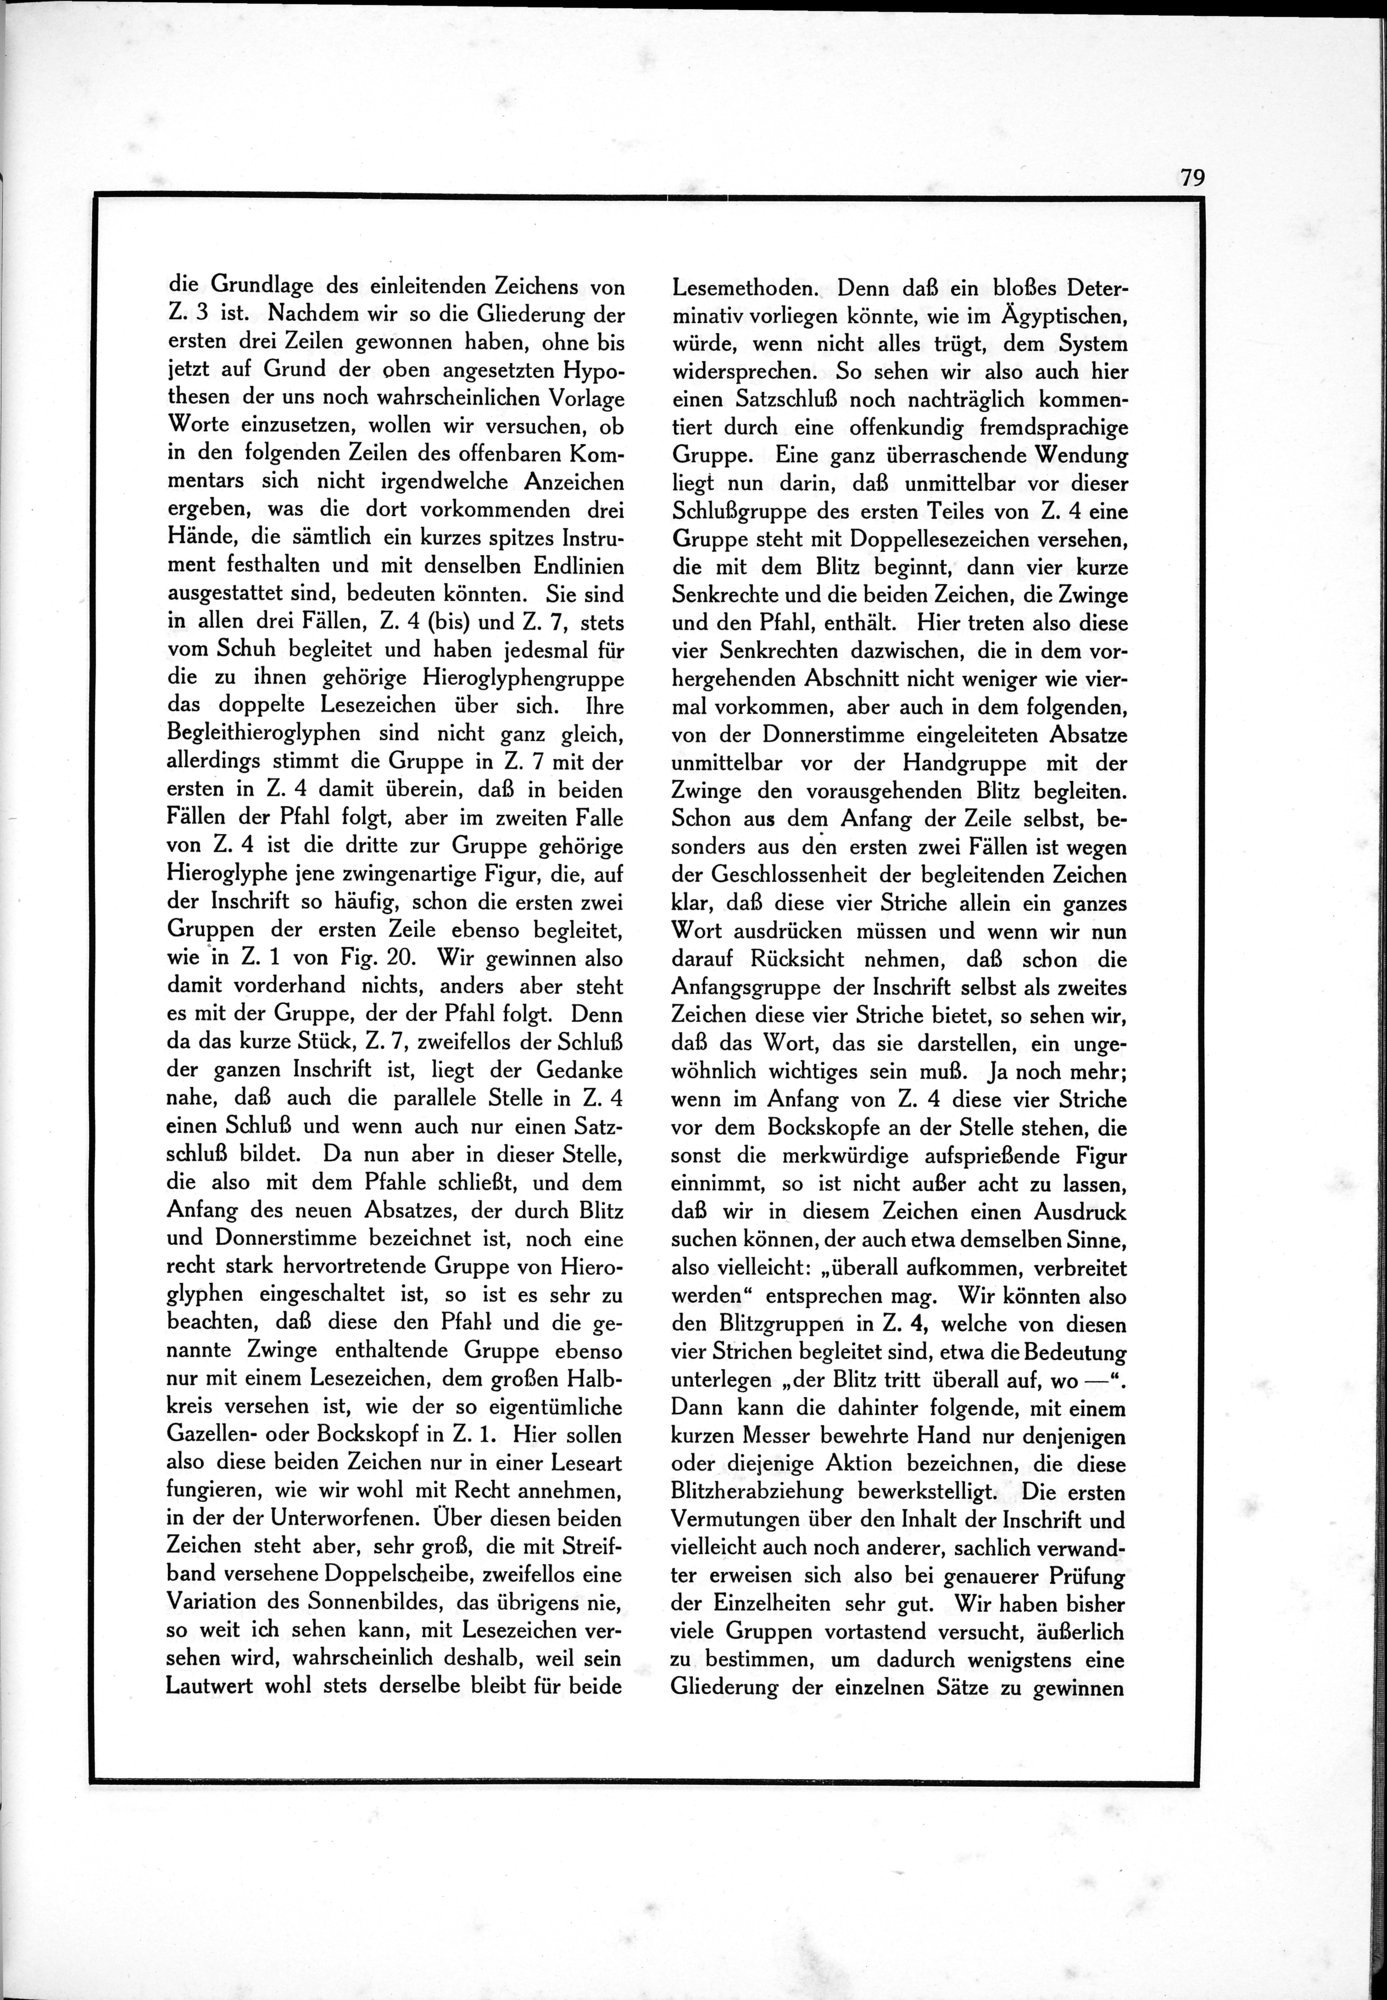 Die Teufel des Avesta und Ihre Beziehungen zur Ikonographie des Buddhismus Zentral-Asiens : vol.1 / Page 83 (Grayscale High Resolution Image)